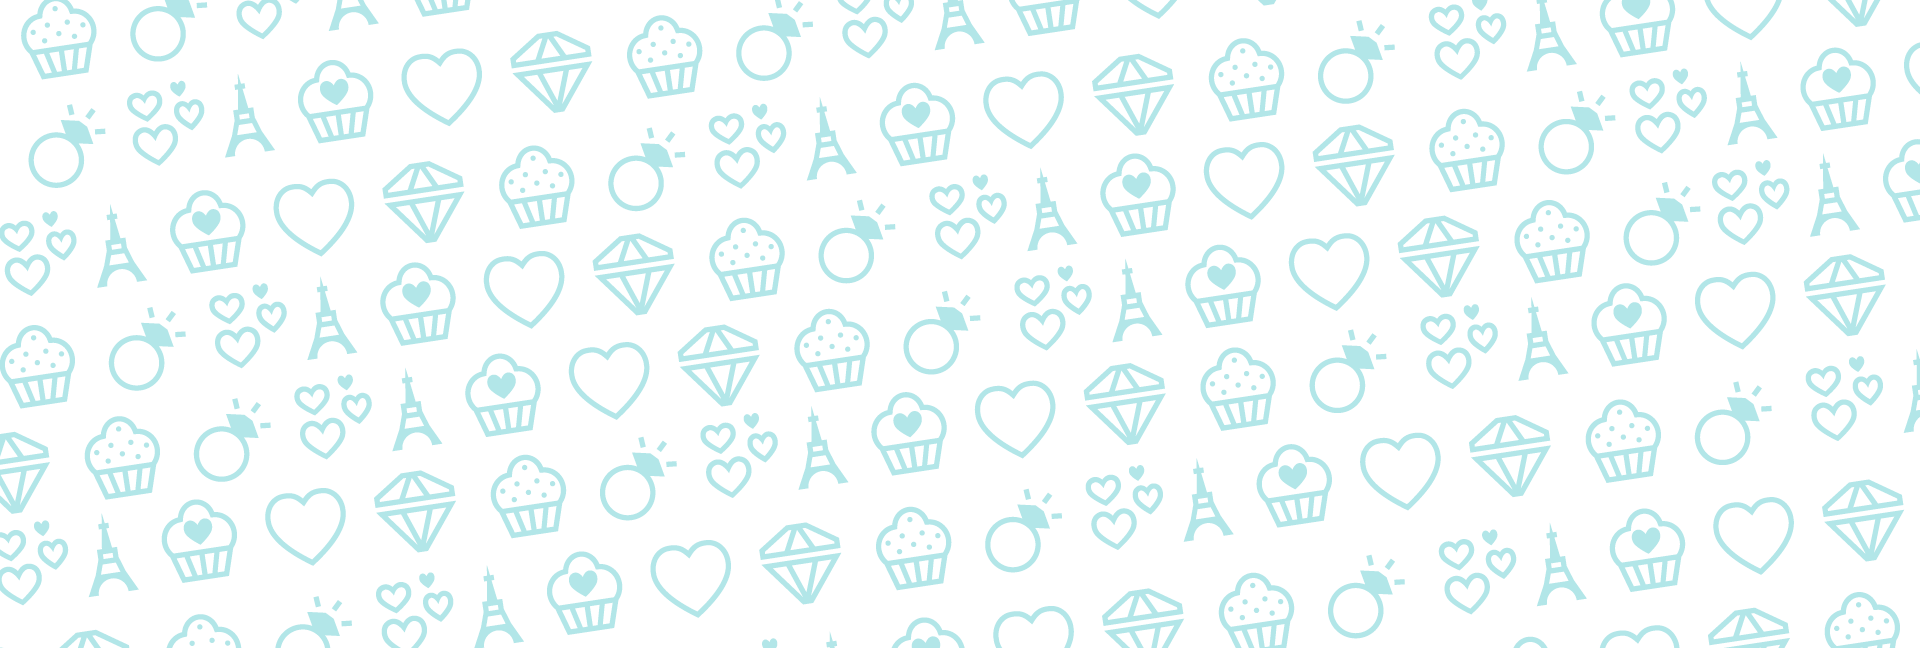 icons pro valentines